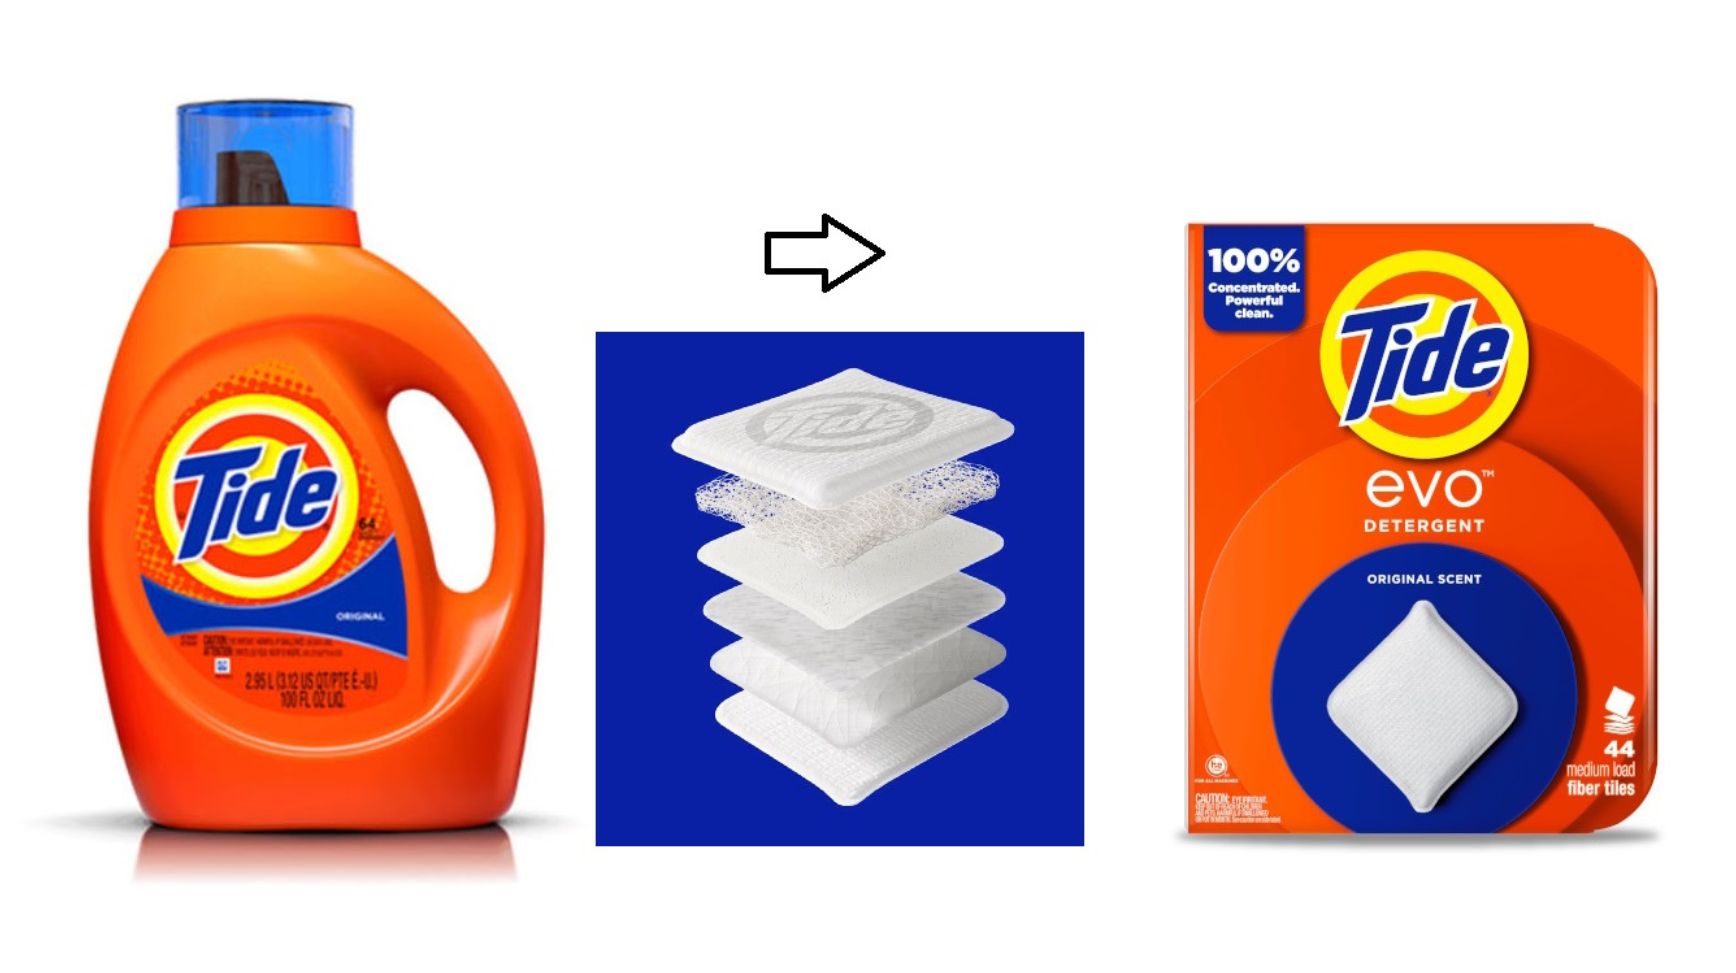 Procter & Gamble introduceert Tide evo, een vloeistofvrij wasmiddel in de vorm van zachte vierkanten doekjes van vezels